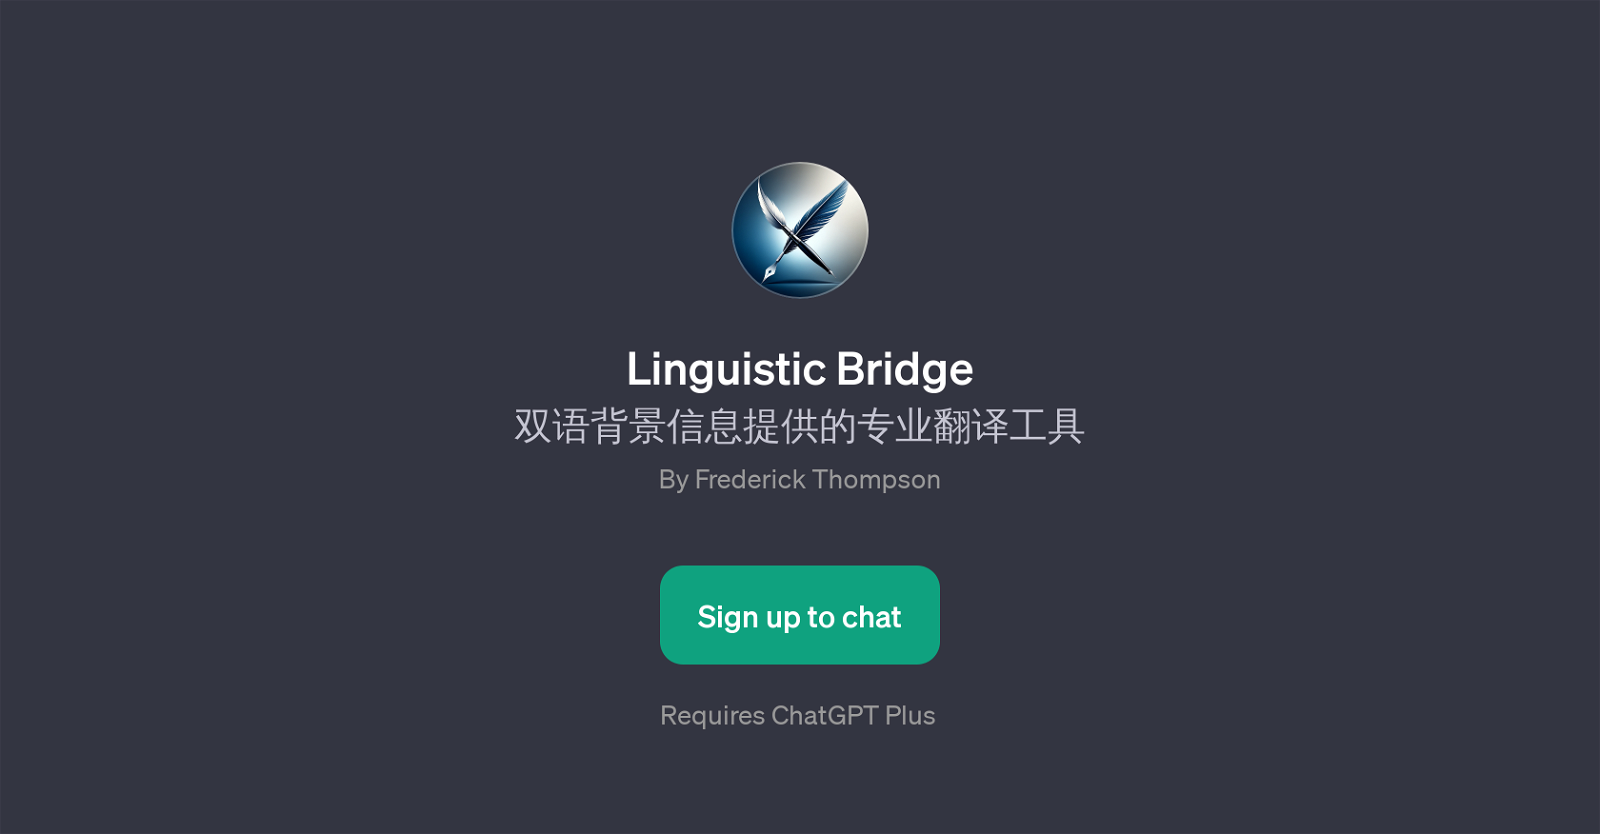 Linguistic Bridge website